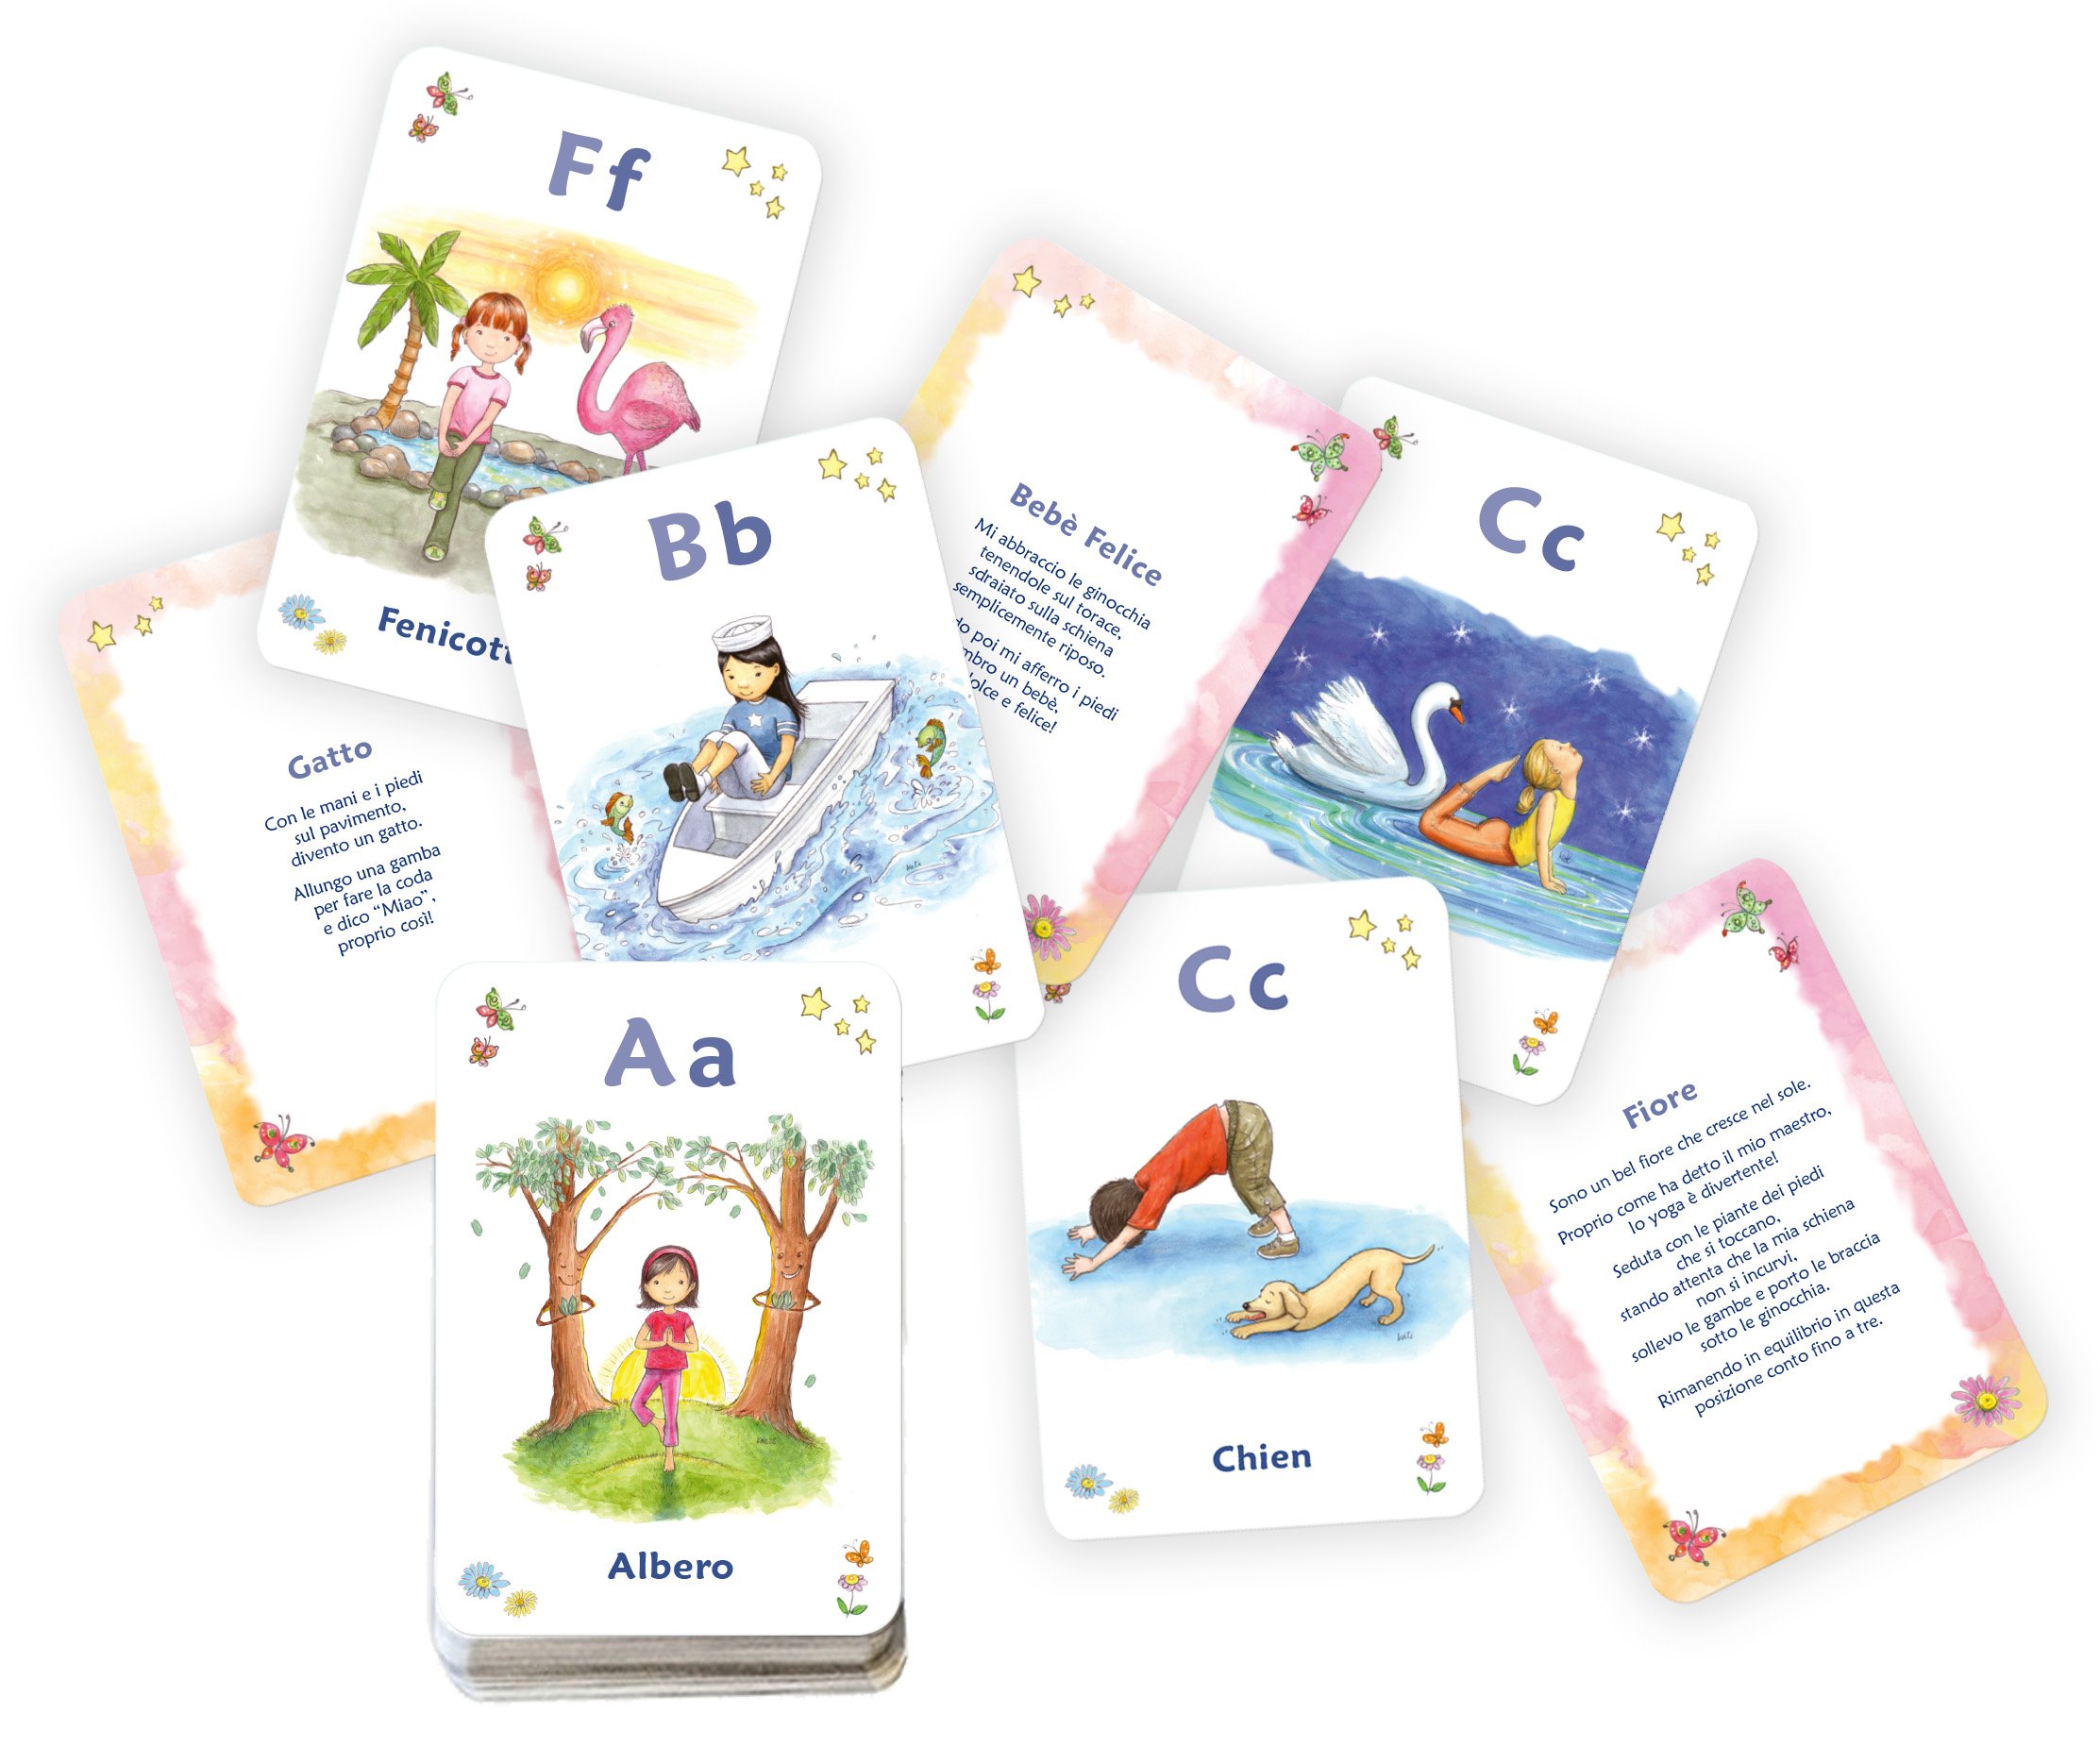 L' ABC dello yoga per bambini. 48 carte